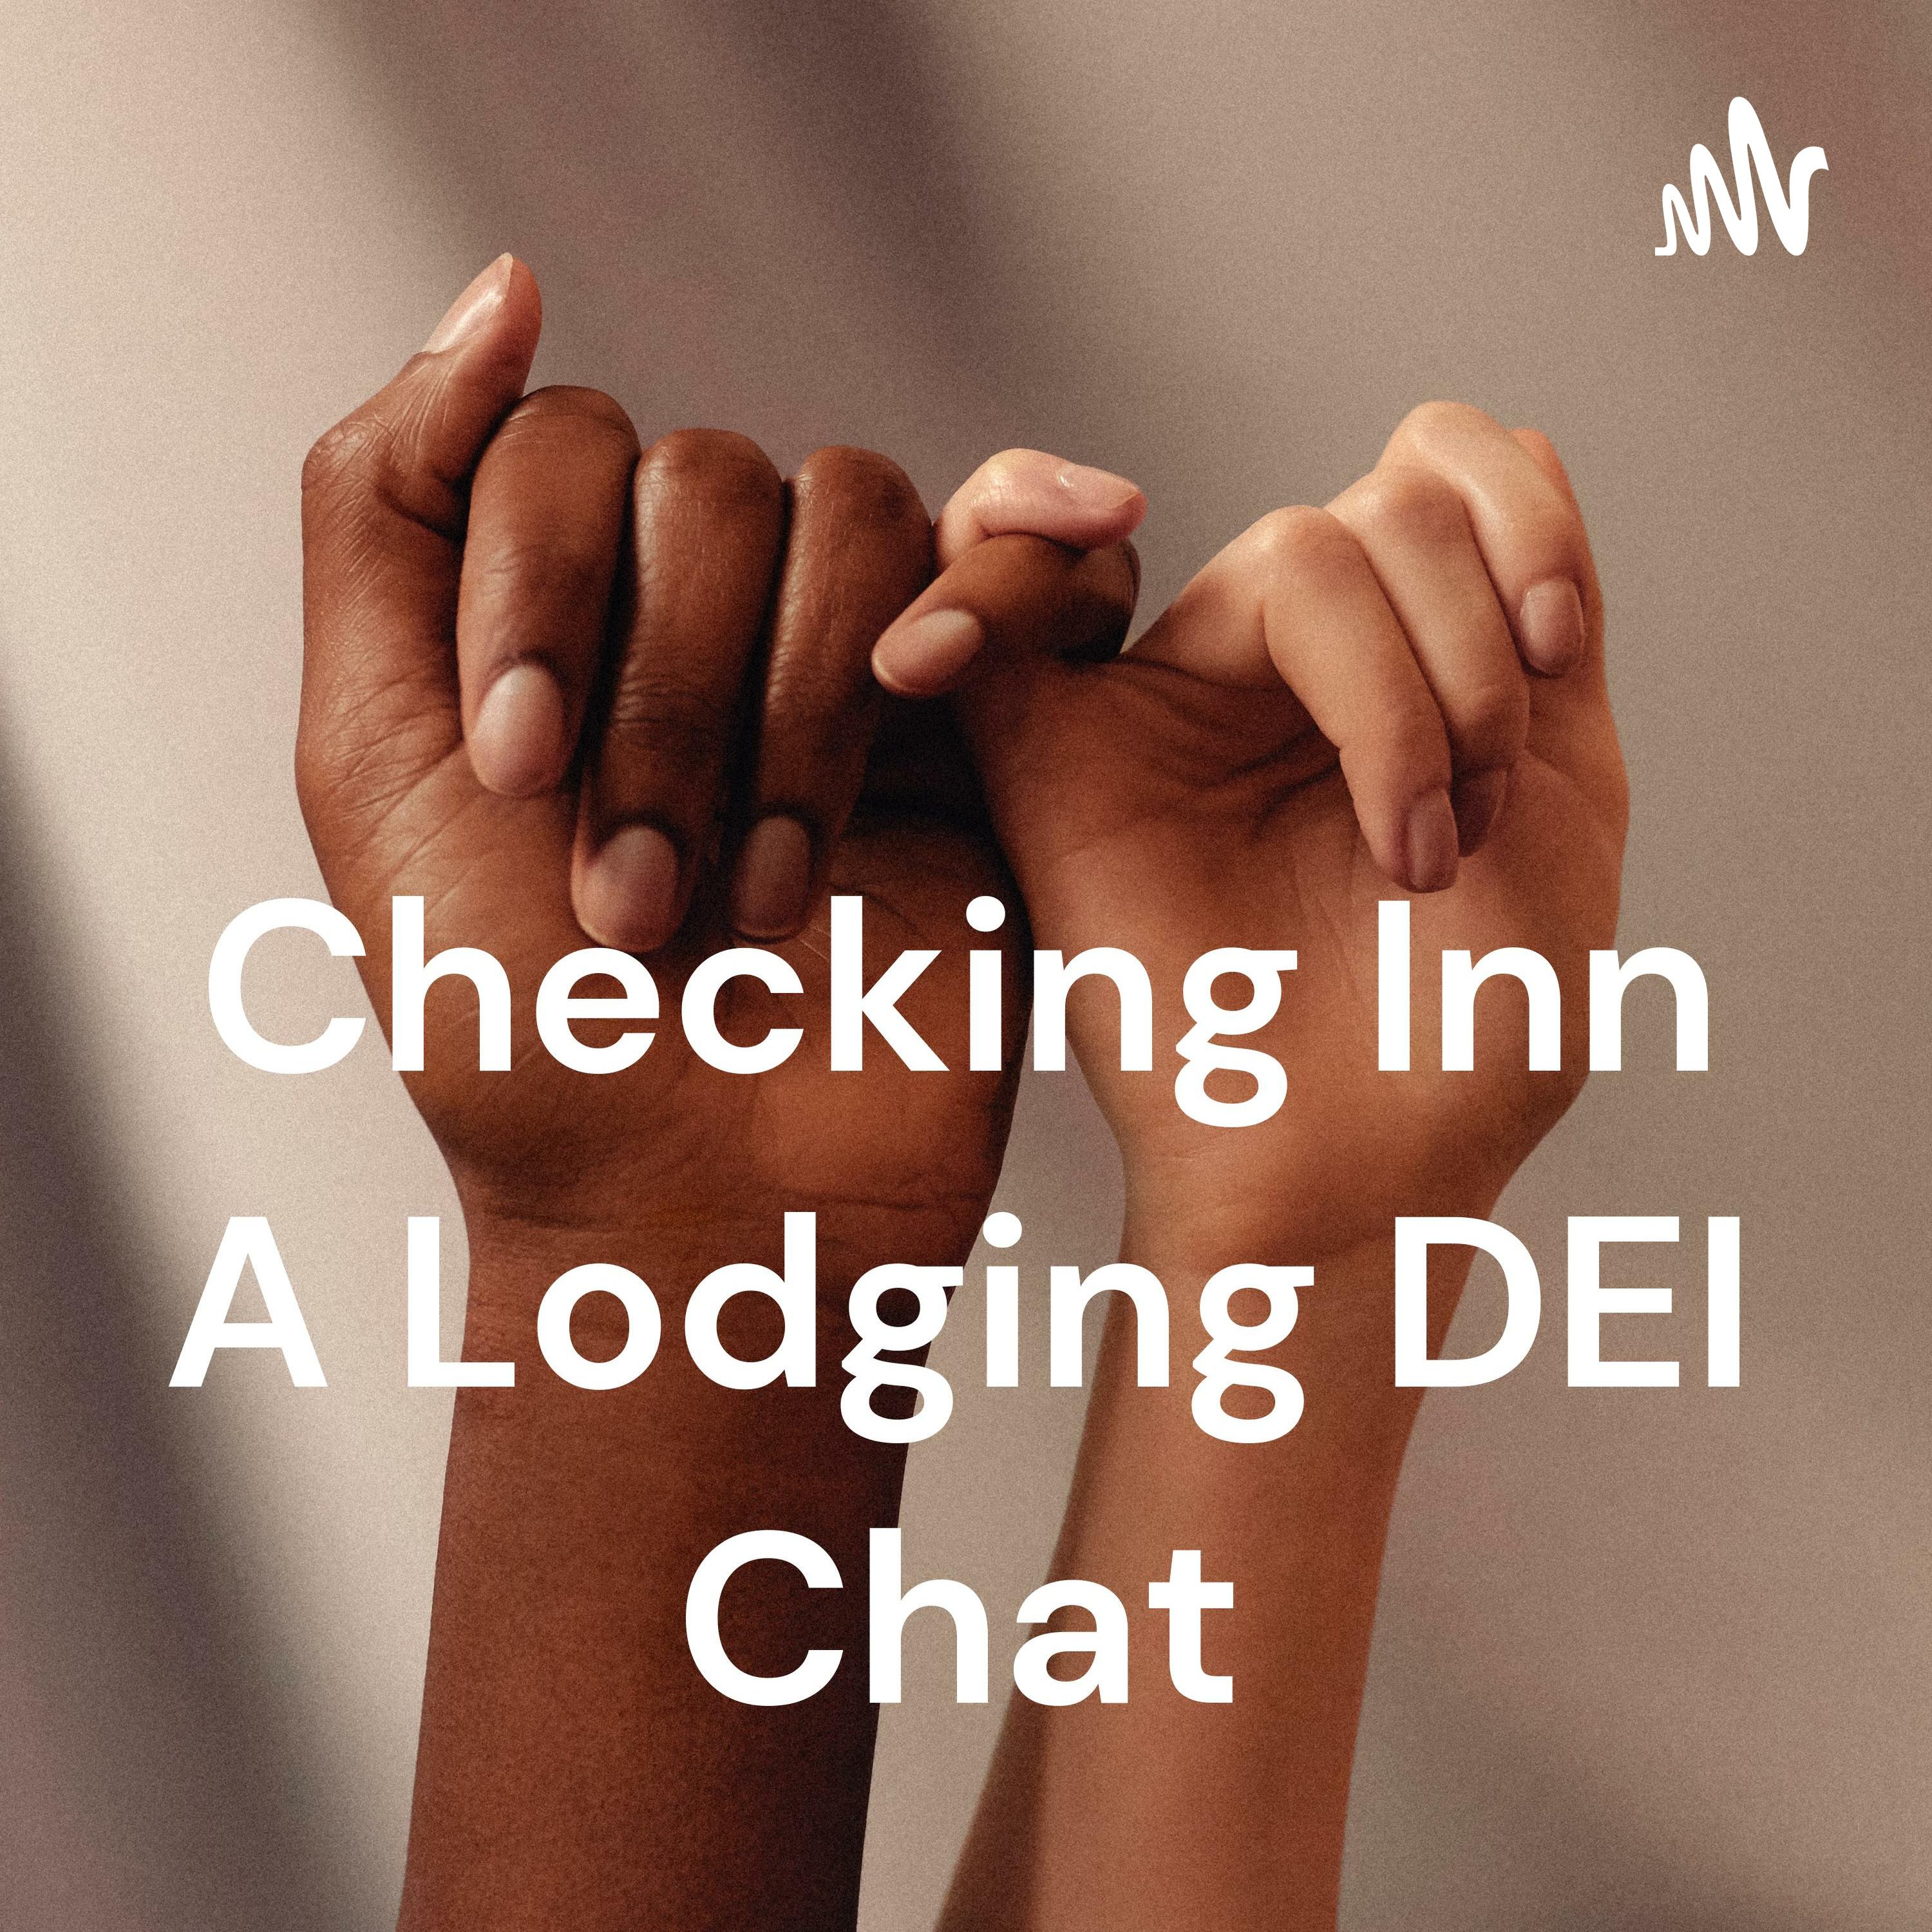 Checking Inn A Lodging DEI Chat